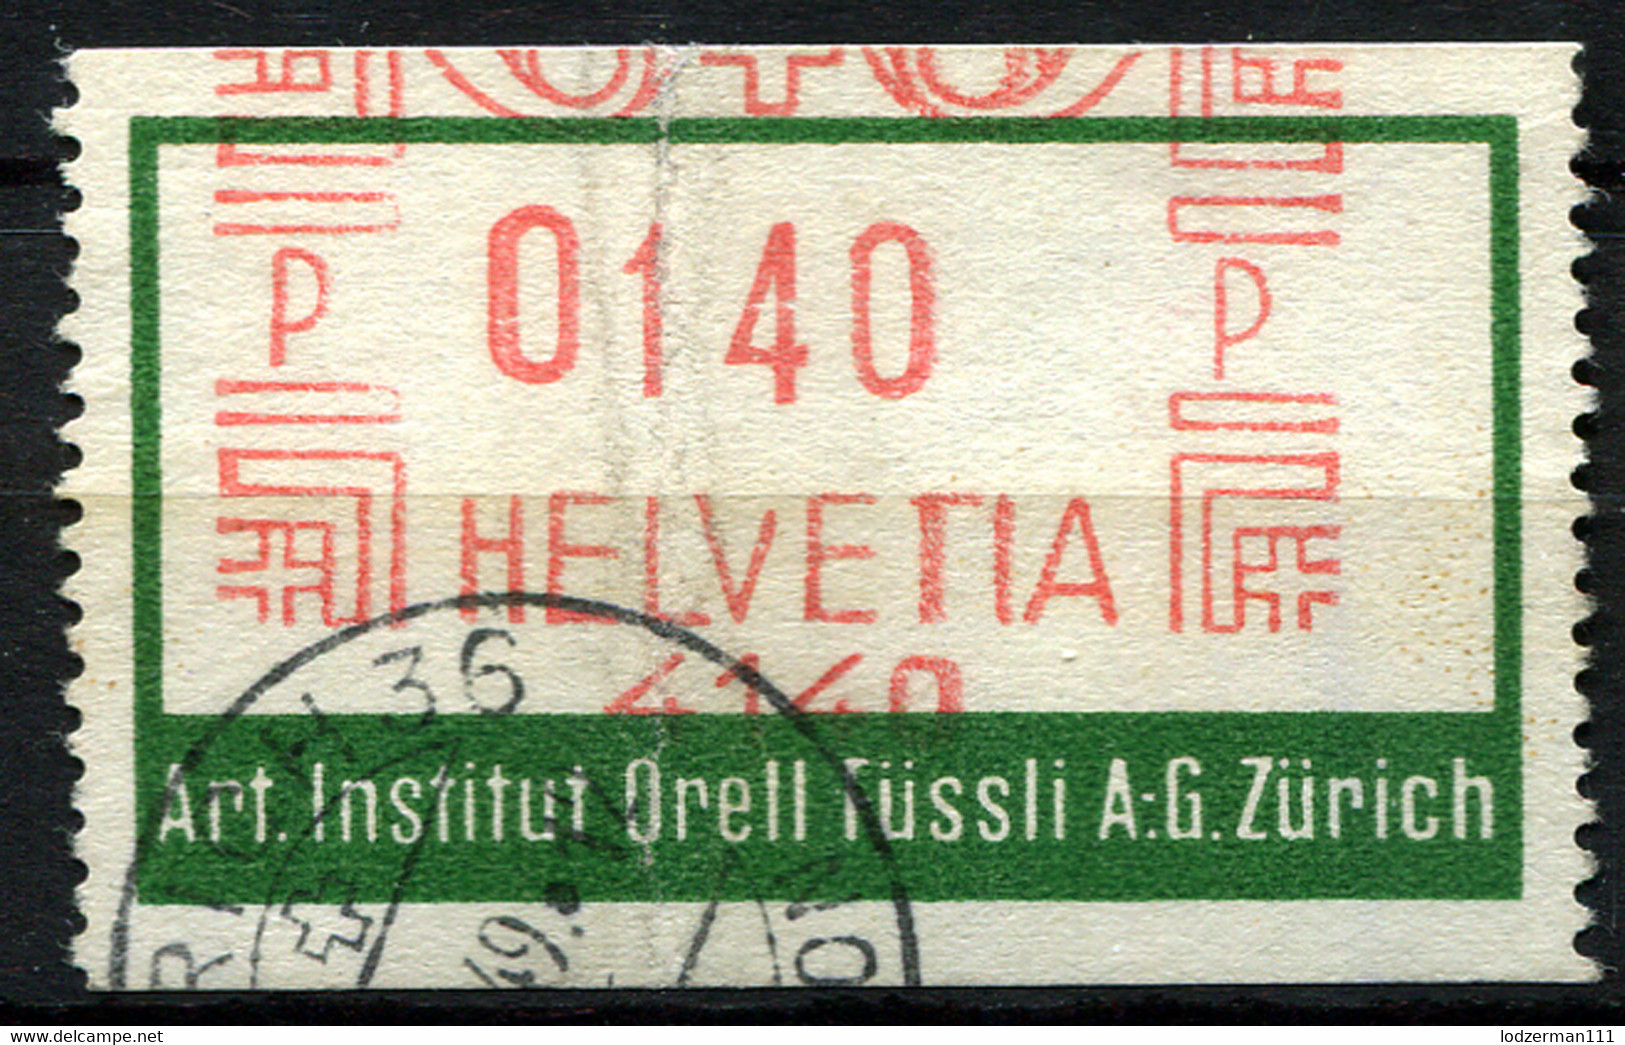 ZURICH 1949 Art. Institut Orell - Machine Meter Stamp - Frankiermaschinen (FraMA)